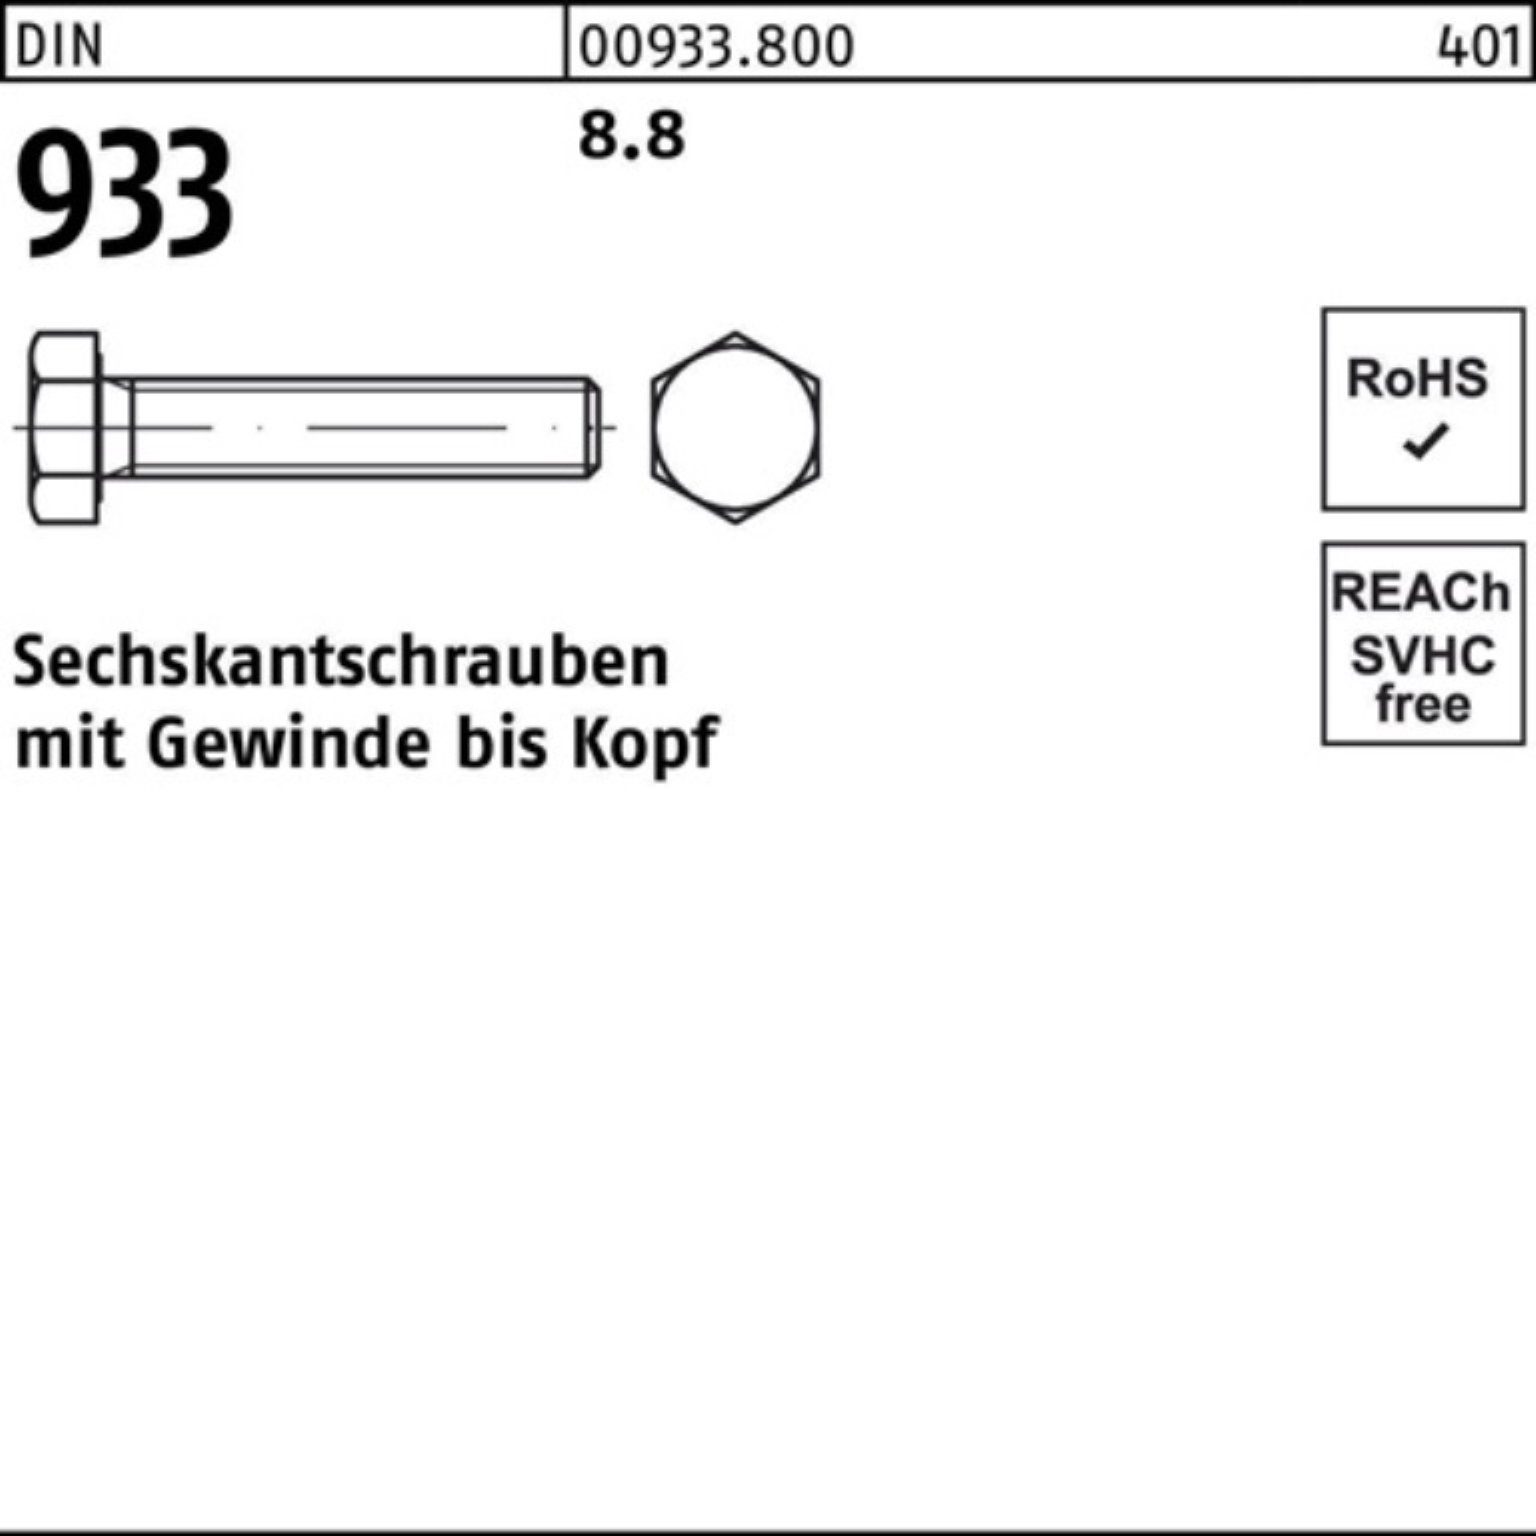 Reyher Sechskantschraube 933 DIN 8.8 200 Stück Pack M6x 933 Sechskantschraube 200er VG DIN 55